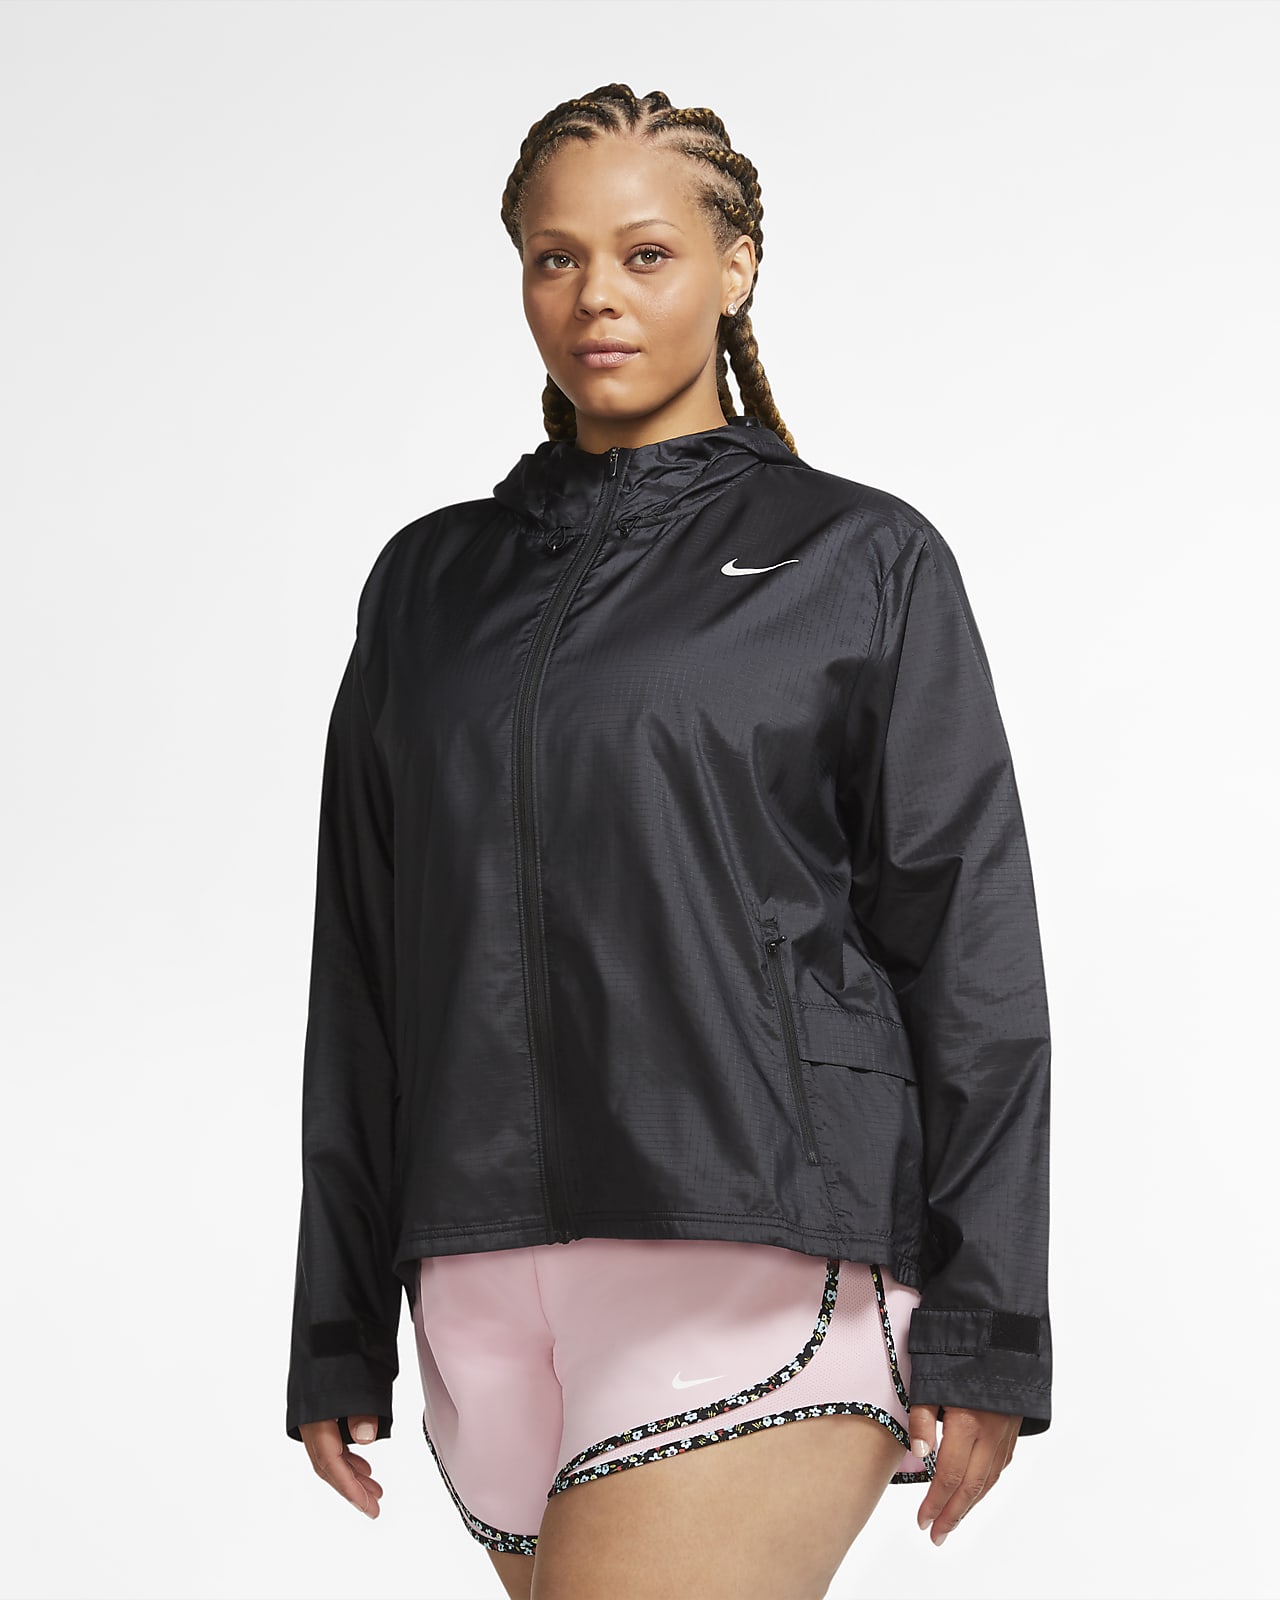 Nike Women's Running Jacket (Plus Size). IE